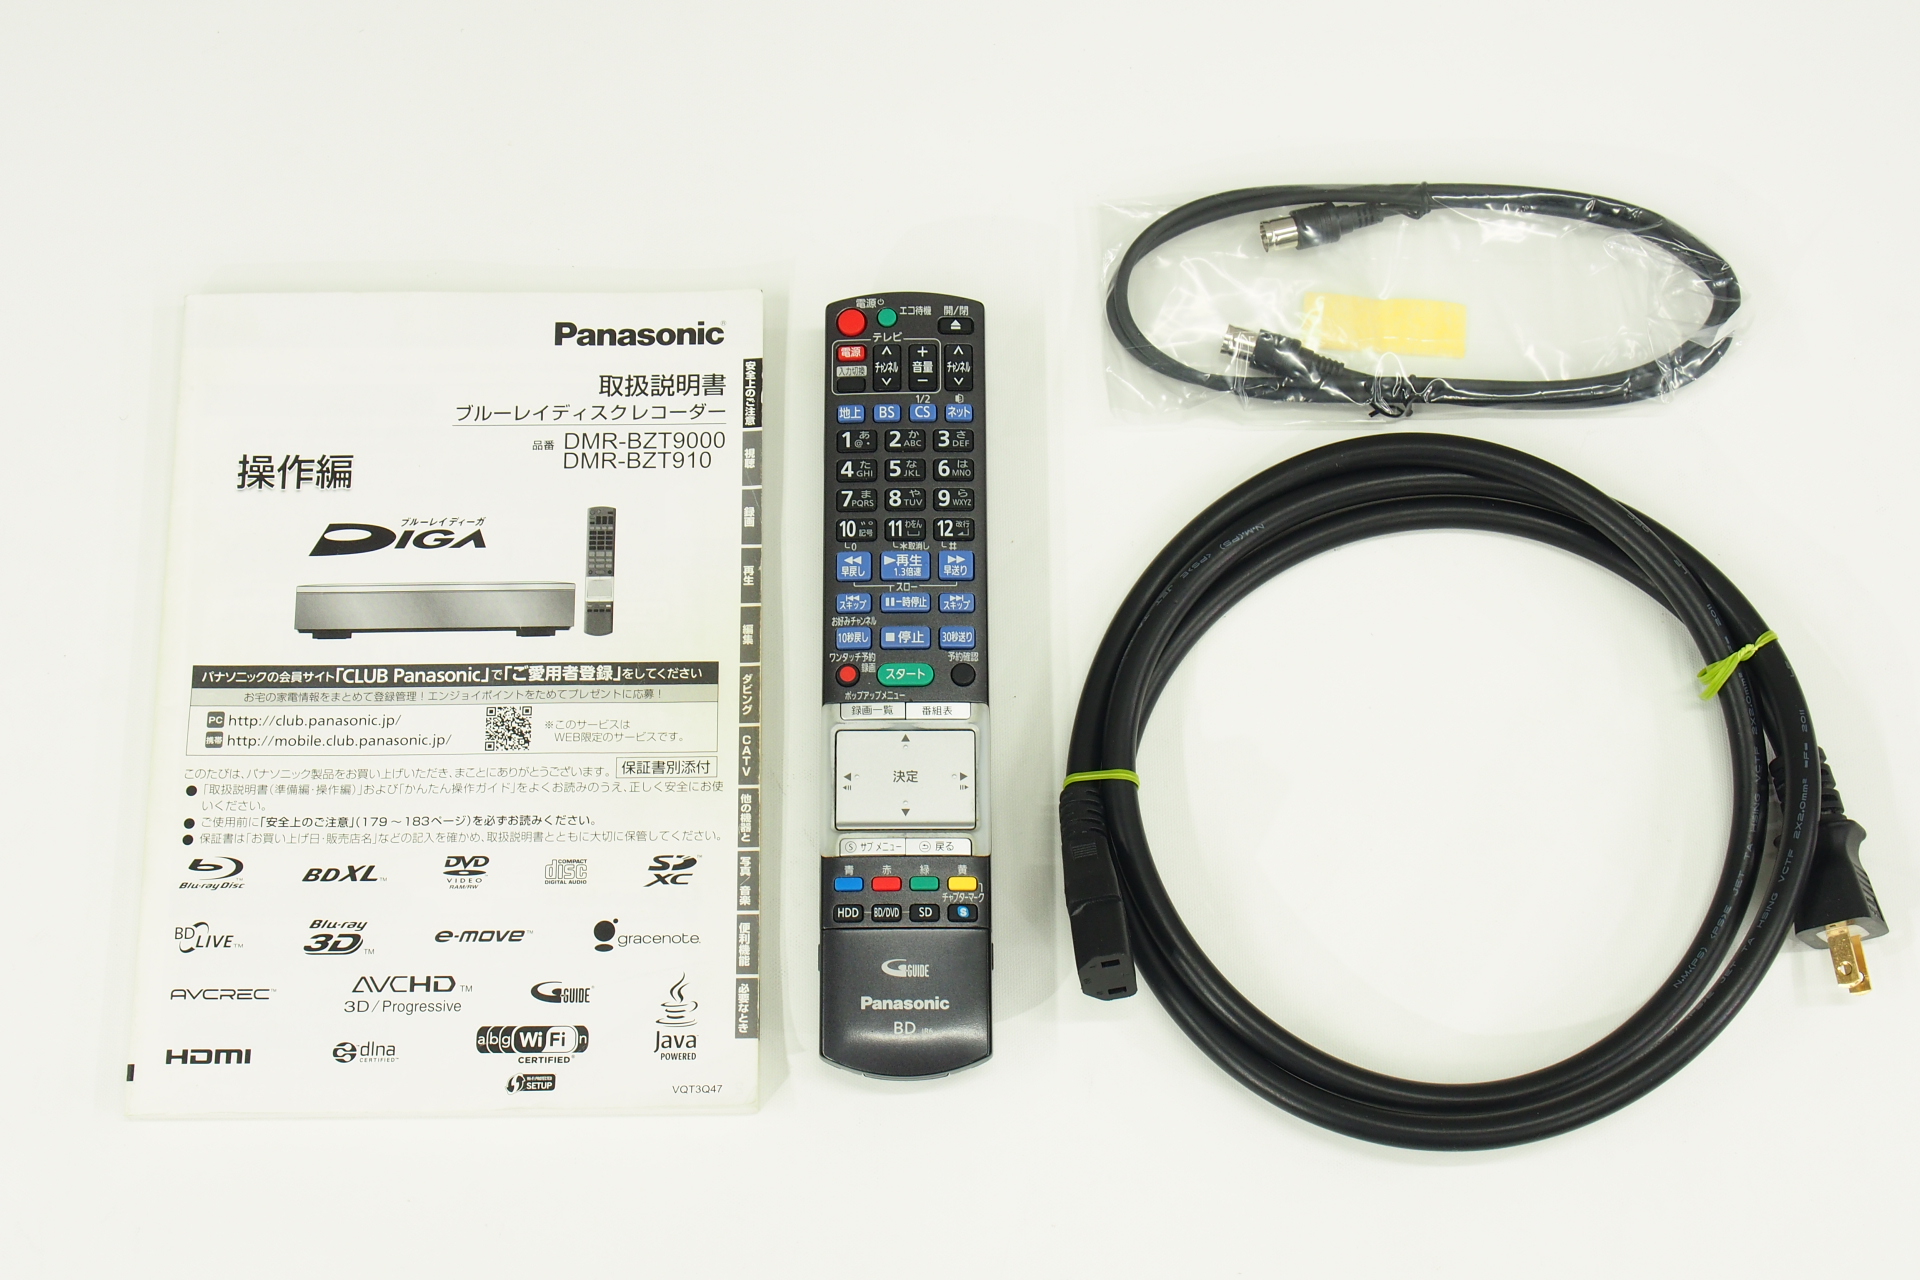 アバックWEB-SHOP / 【中古】Panasonic DMR-BZT9000【コード01-09170 